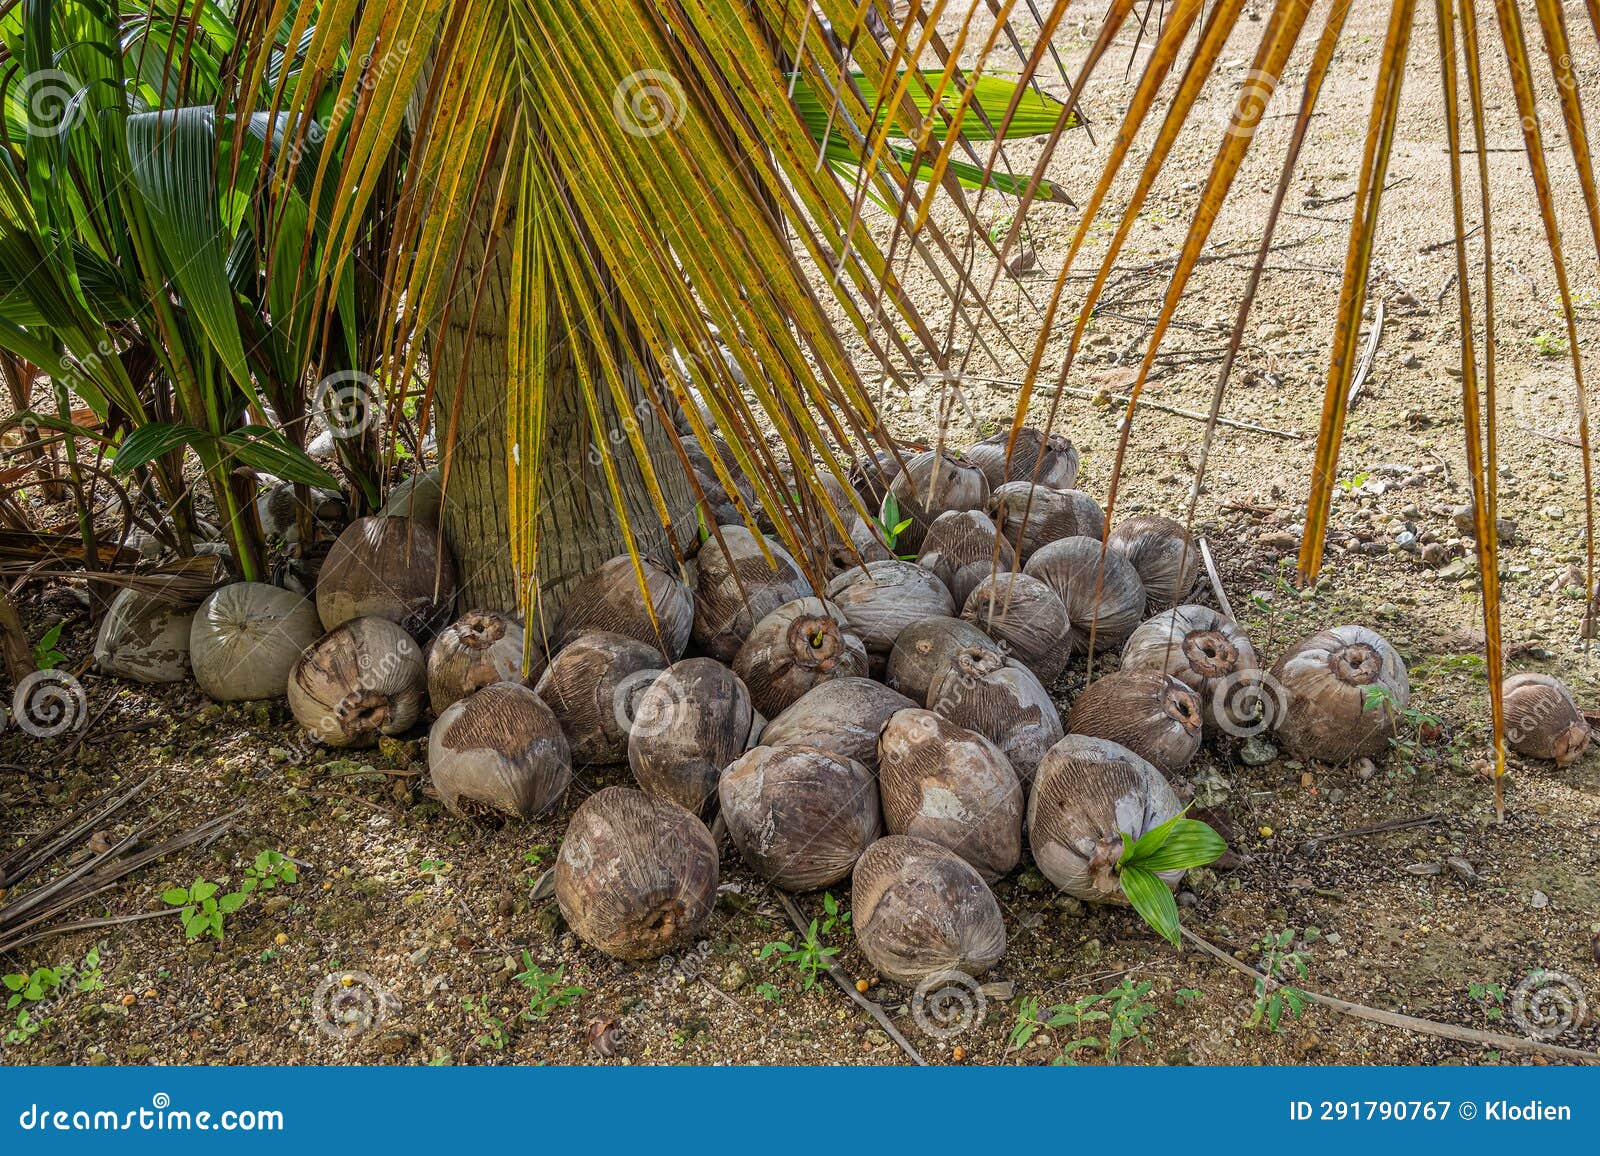 bunch of old coconuts, parque ecoturÃÂ­stico. zihuatanejo, mexico